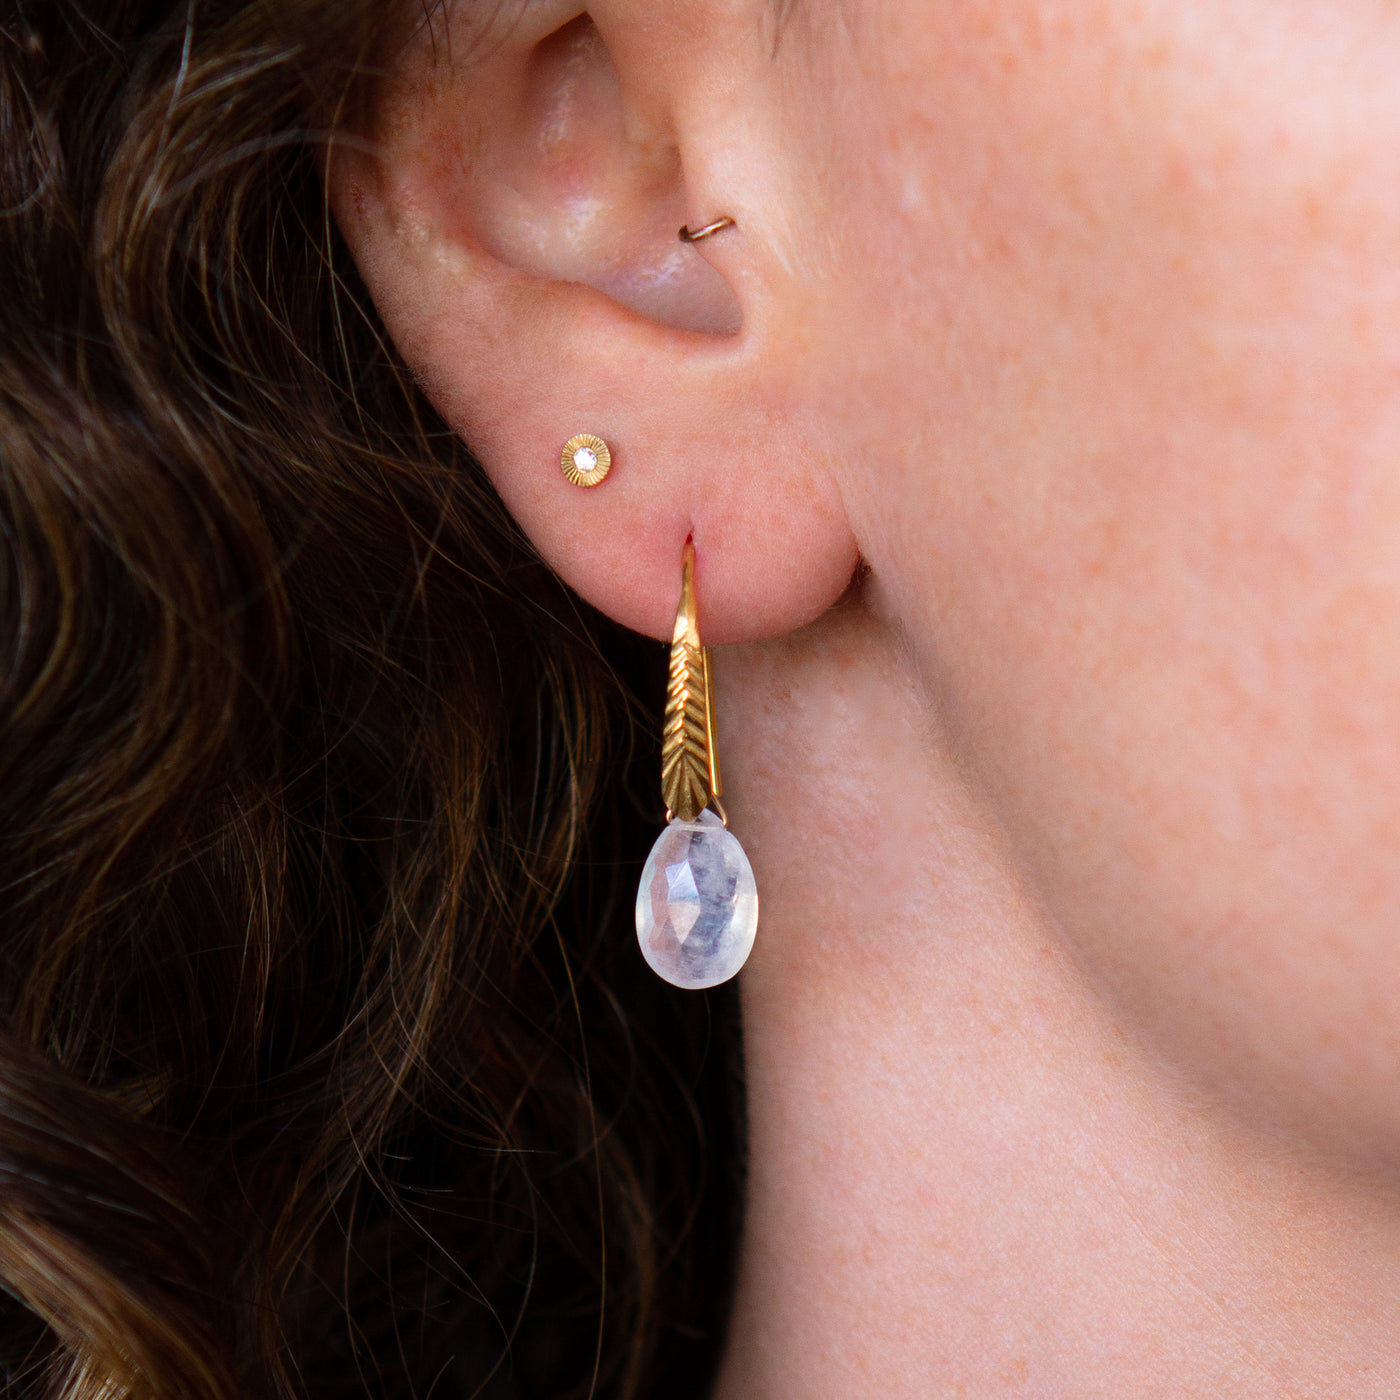 Vermeil Herringbone dangle earrings with pear shape moonstone drops on an ear